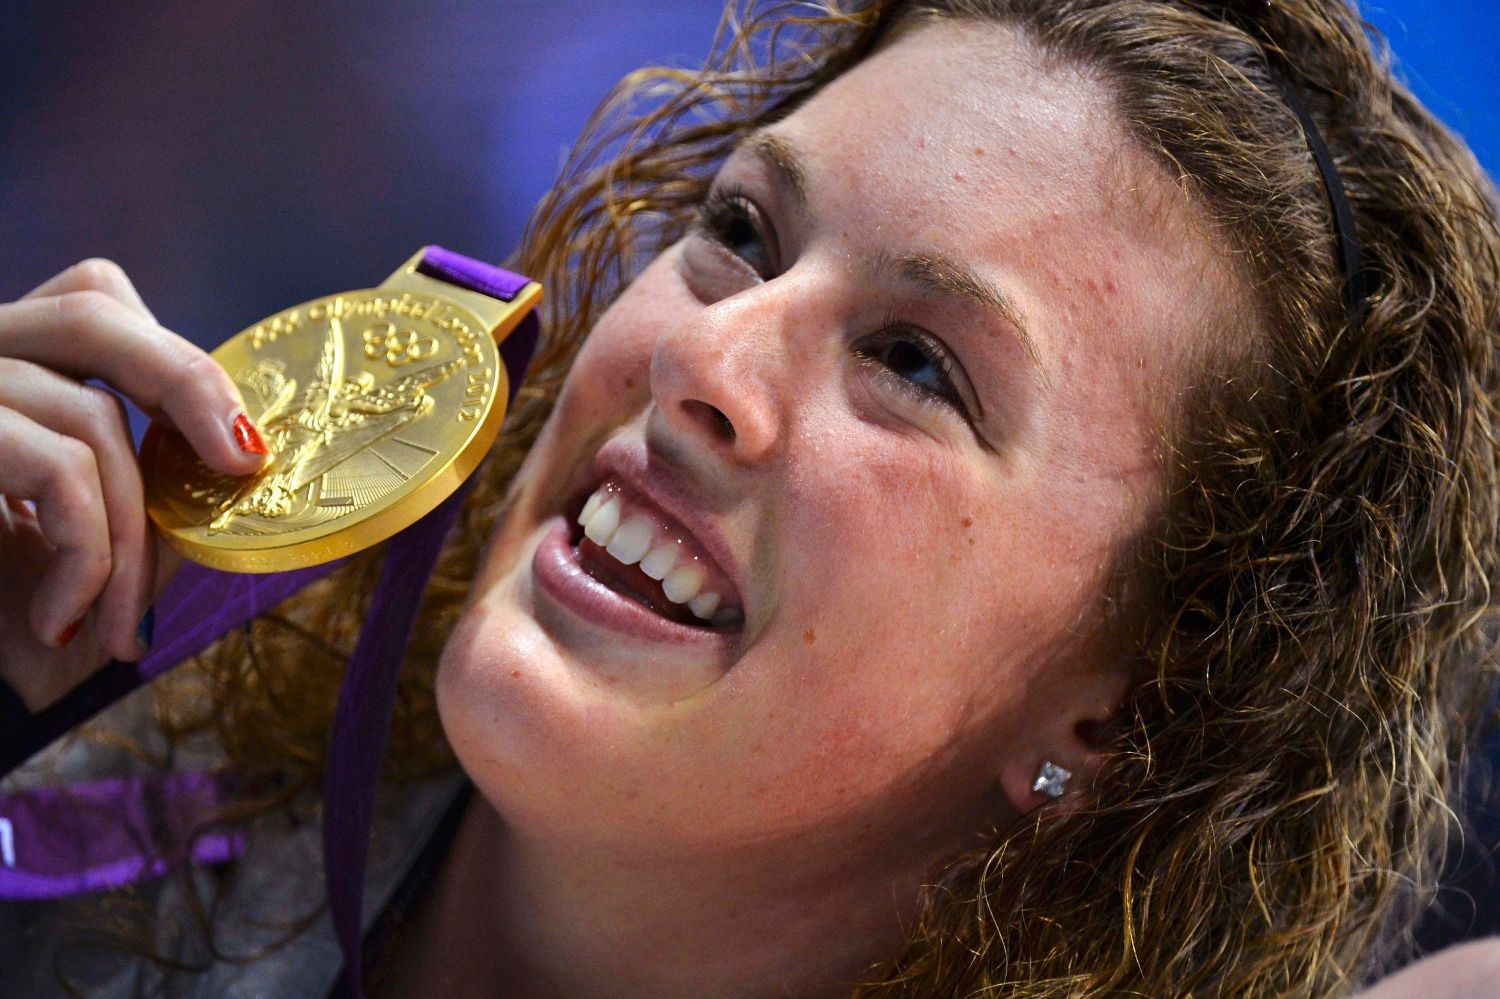 Americká plavkyně Allison Schmittová pózuje se zlatou medailí za 200 metrů volným stylem na OH 2012 v Londýně.